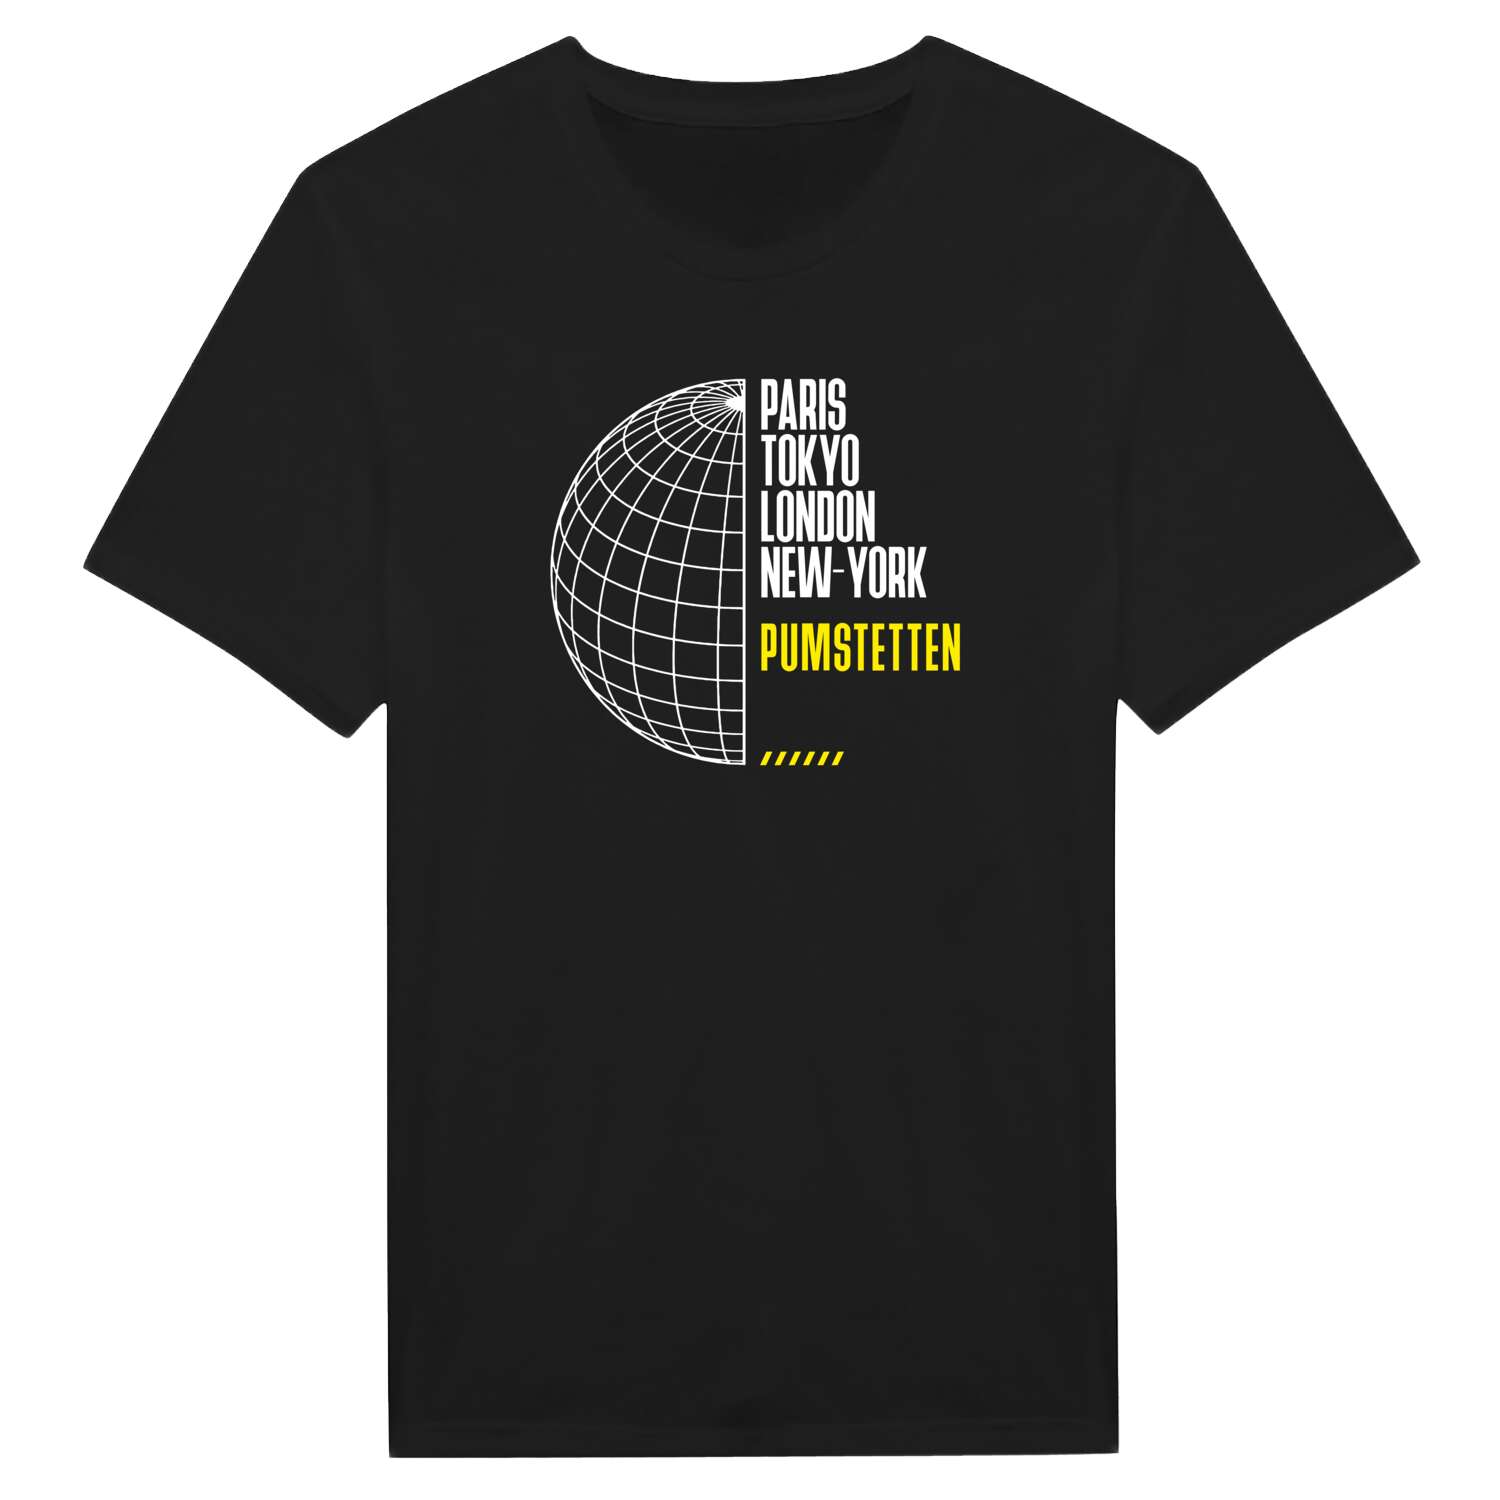 Pumstetten T-Shirt »Paris Tokyo London«